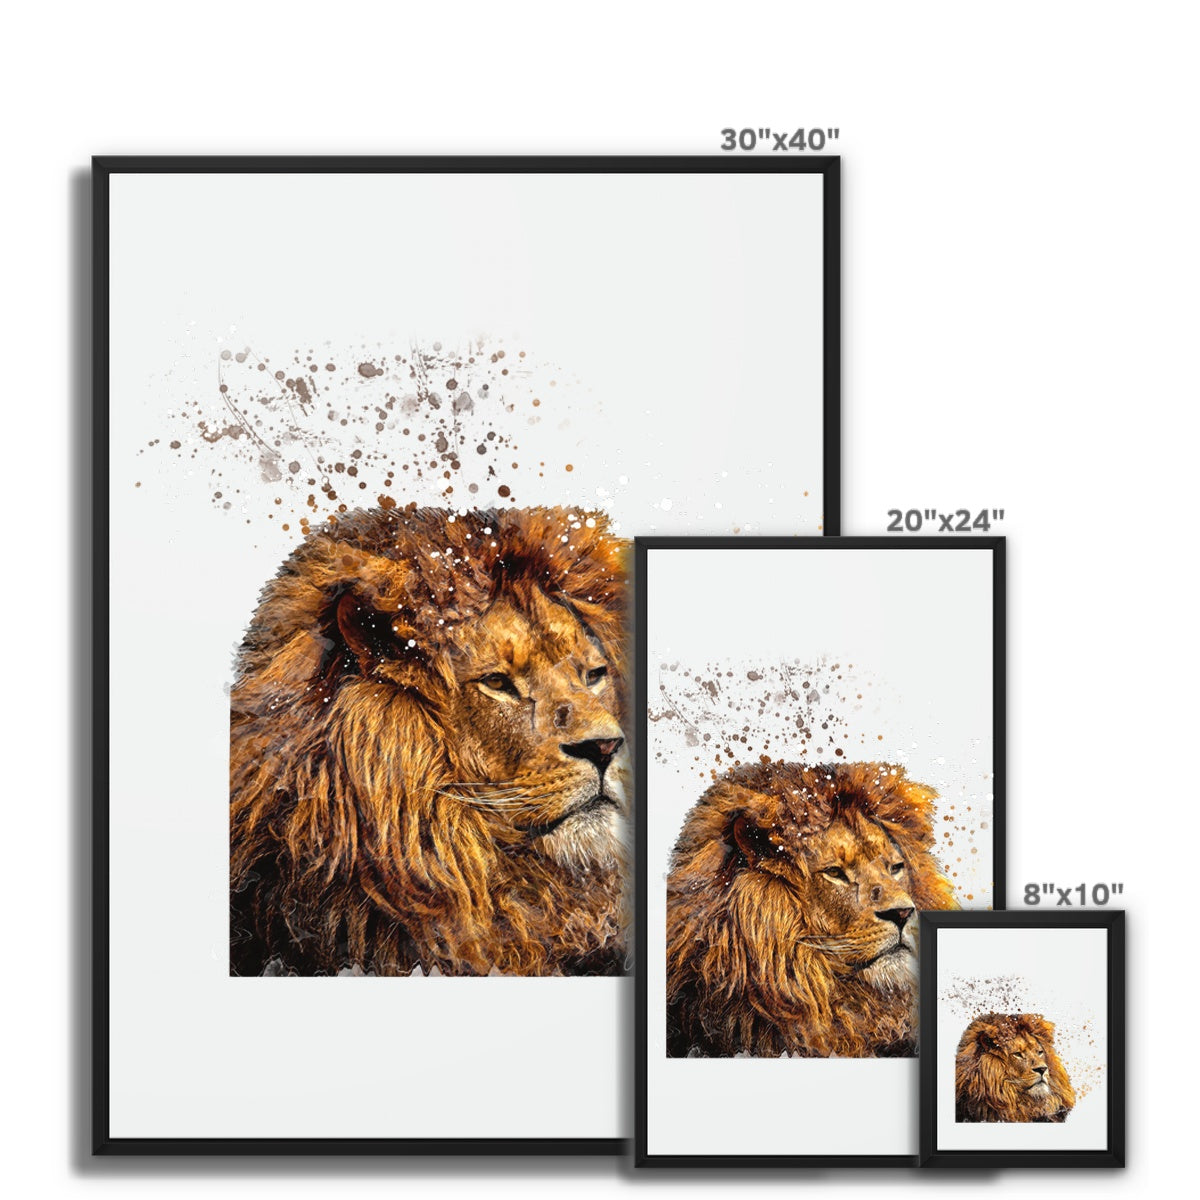 Lion Splatter Brush Artwork Framed Canvas